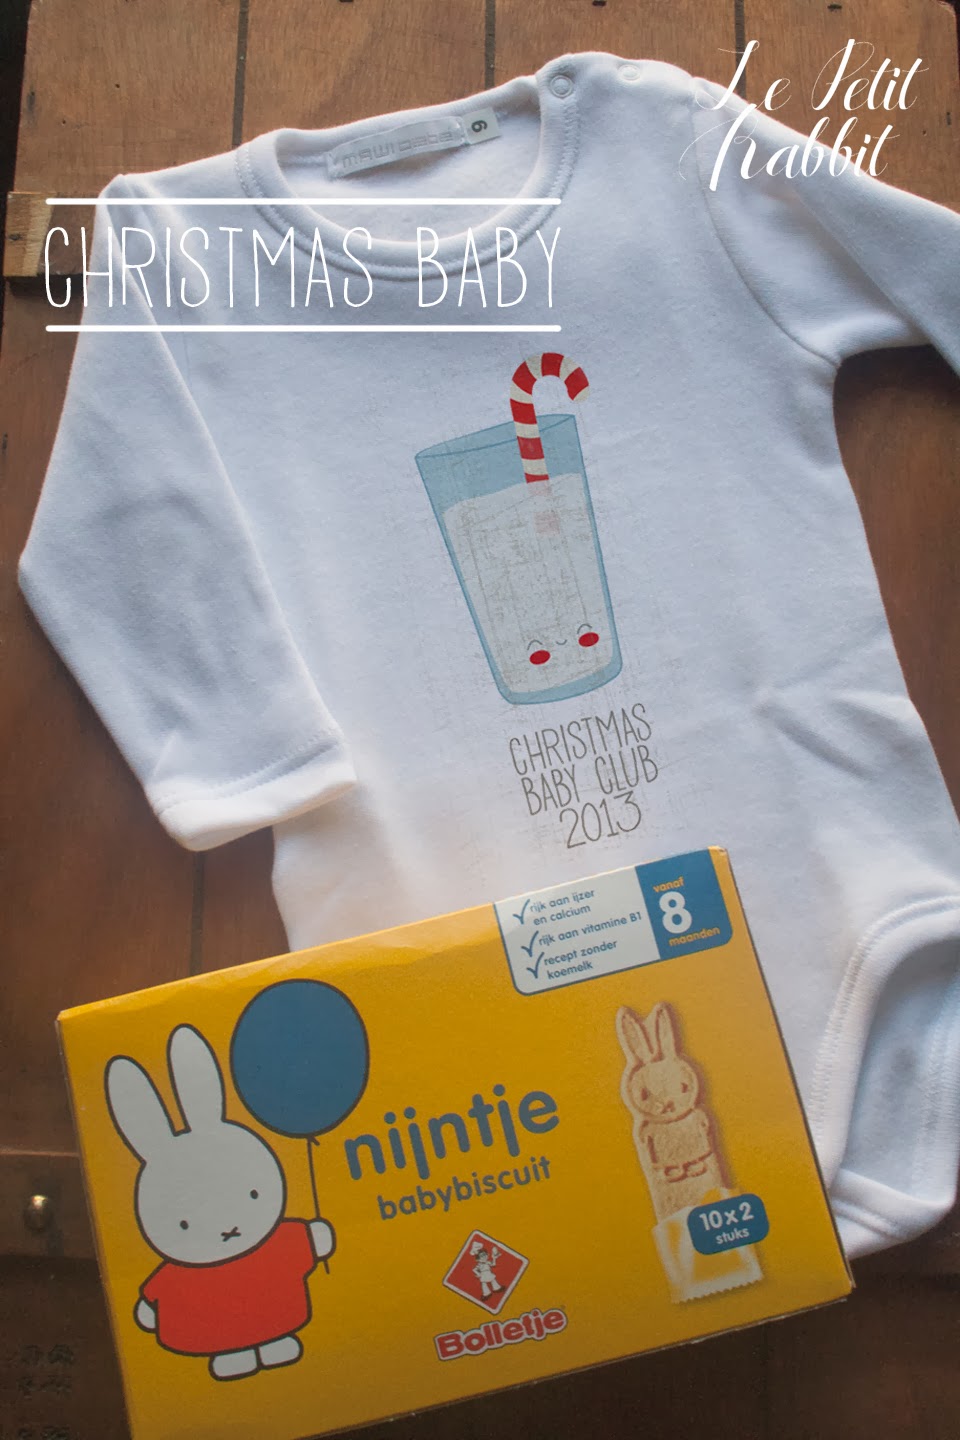 Regali Di Natale Per Amiche Yahoo.Giveaway 2 Anni Le Petit Rabbit